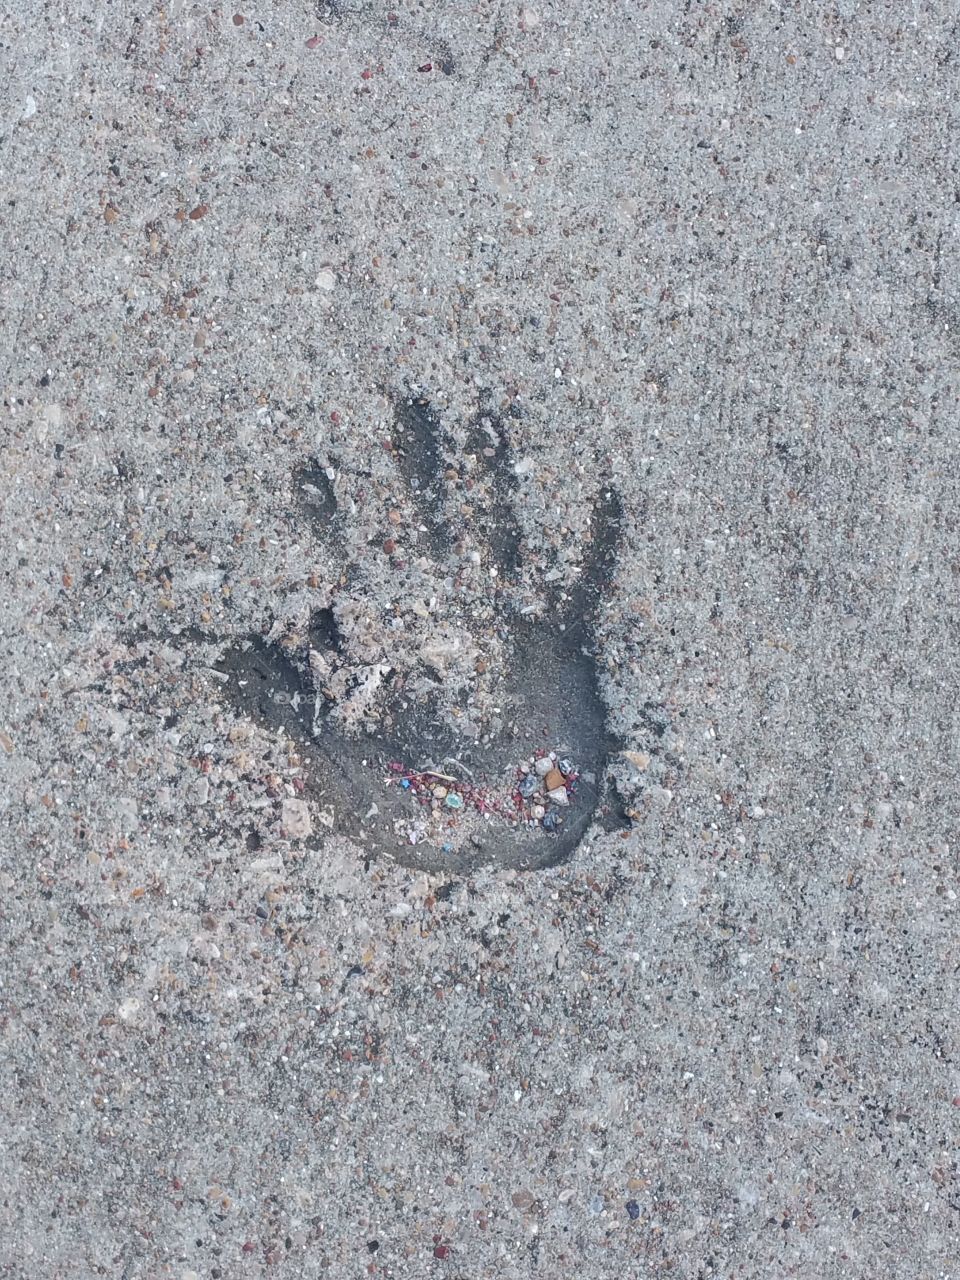 Handprint in the concrete